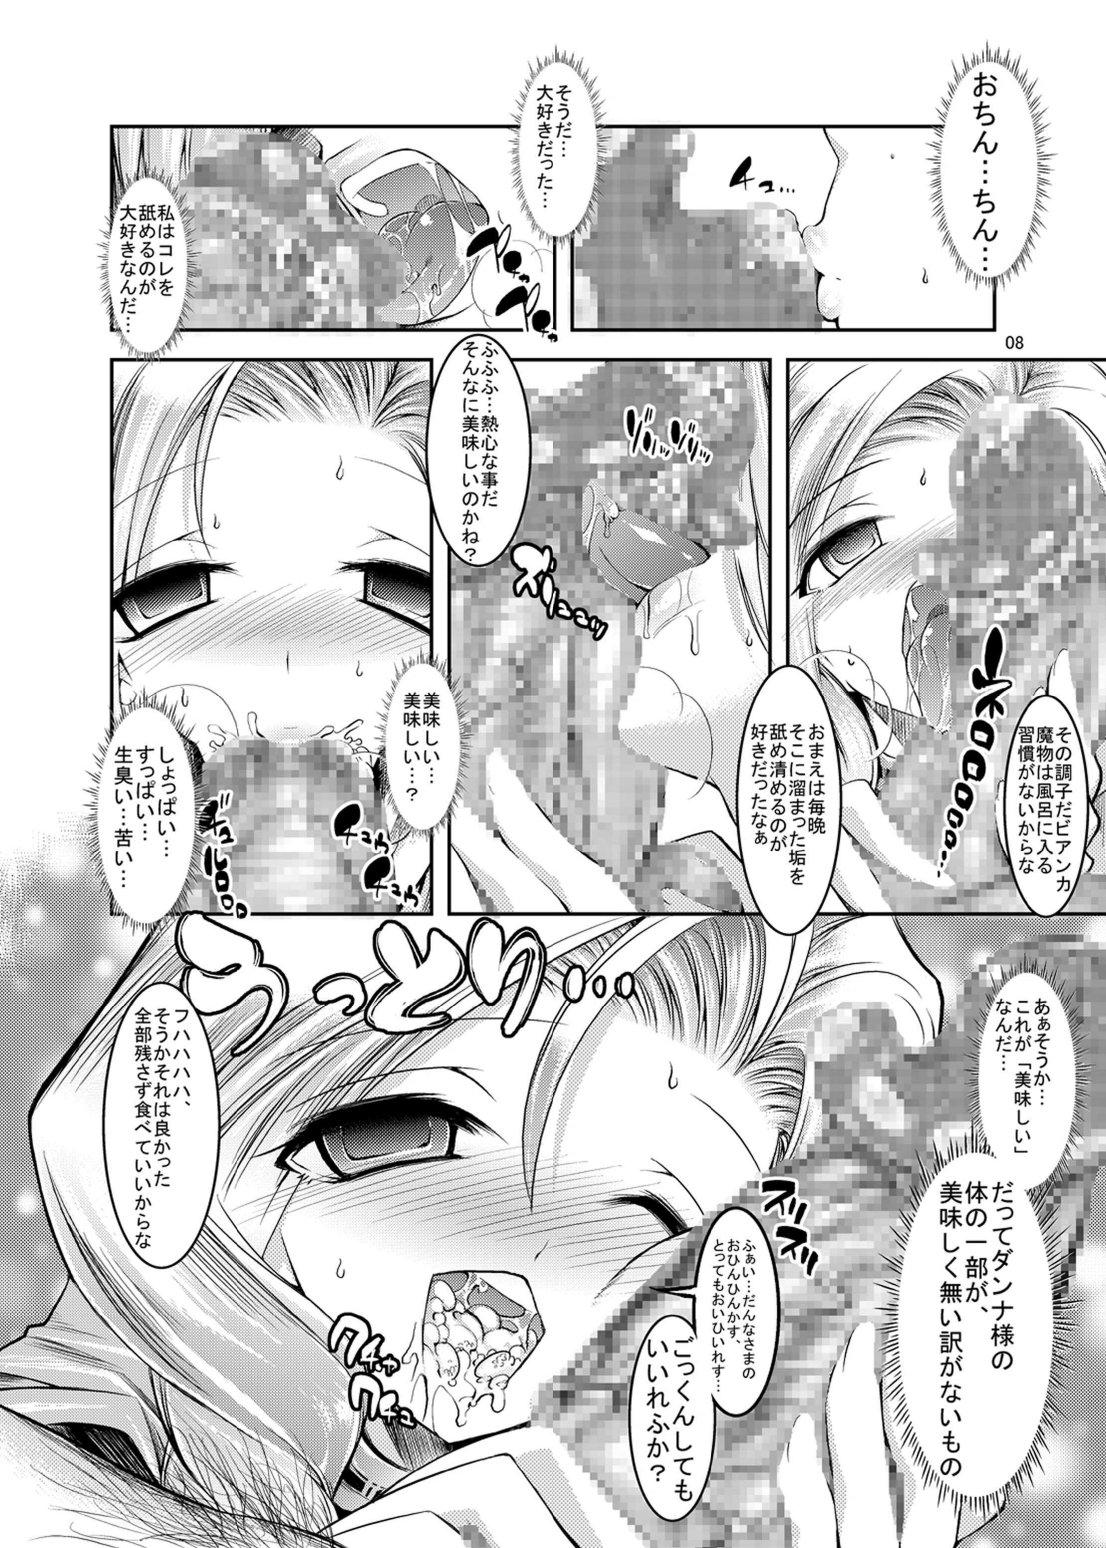 Nalgona Medapani Quest Bianca-hen - Dragon quest v Pendeja - Page 8